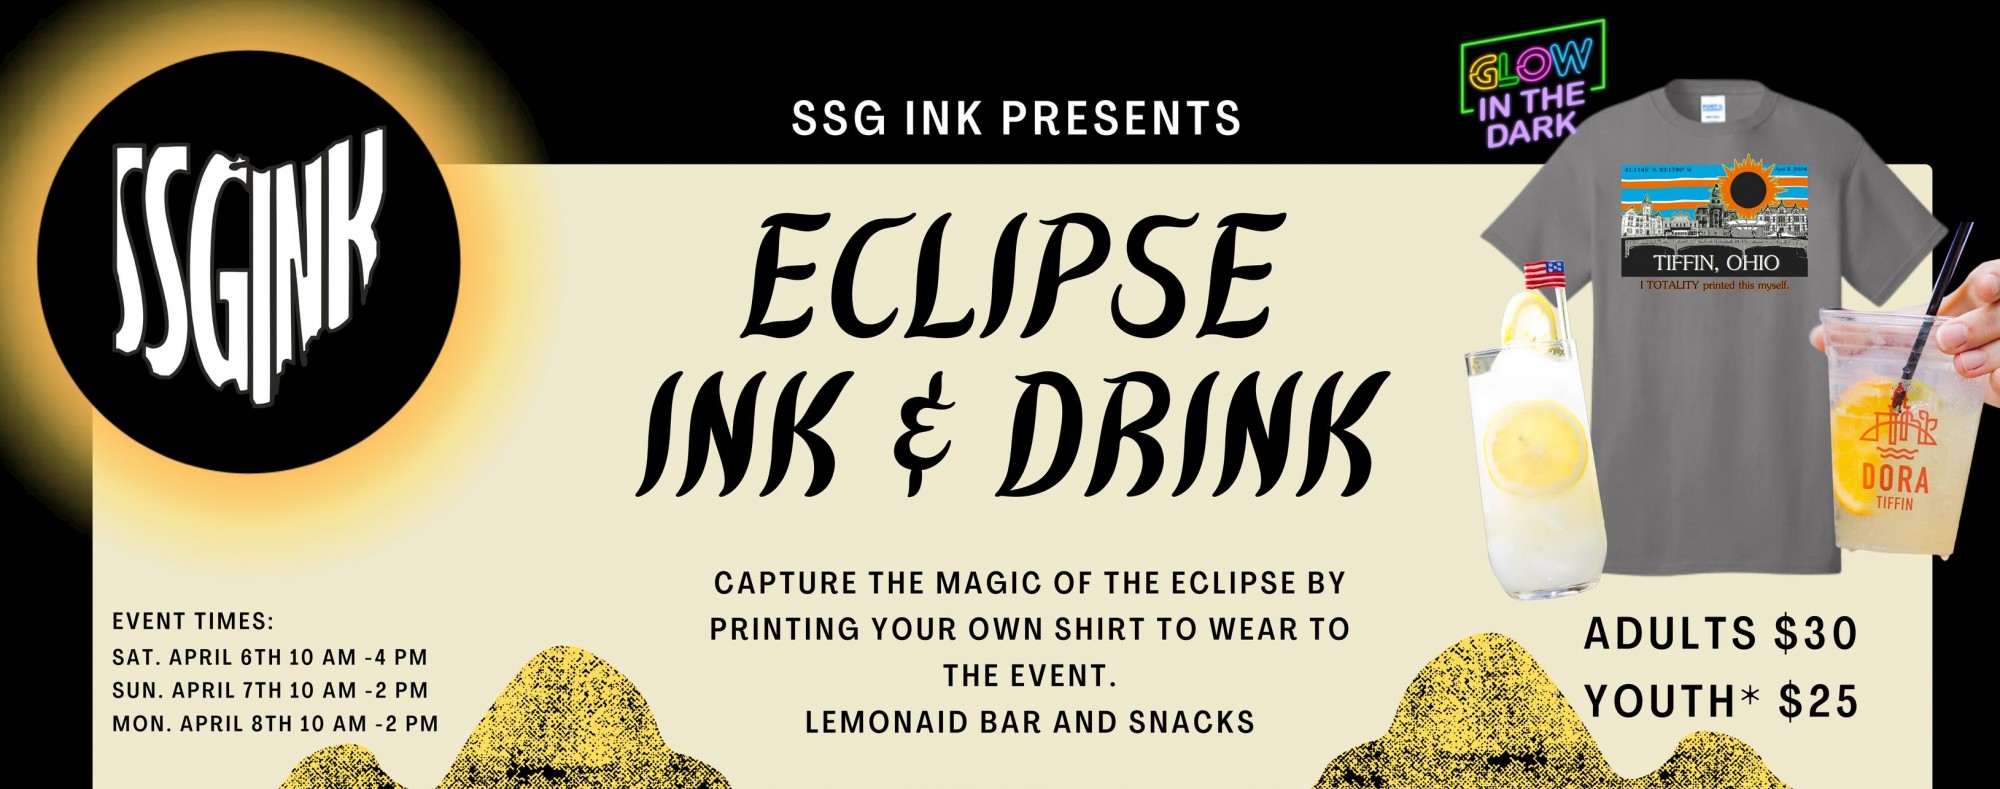 Eclipse Ink & Drink